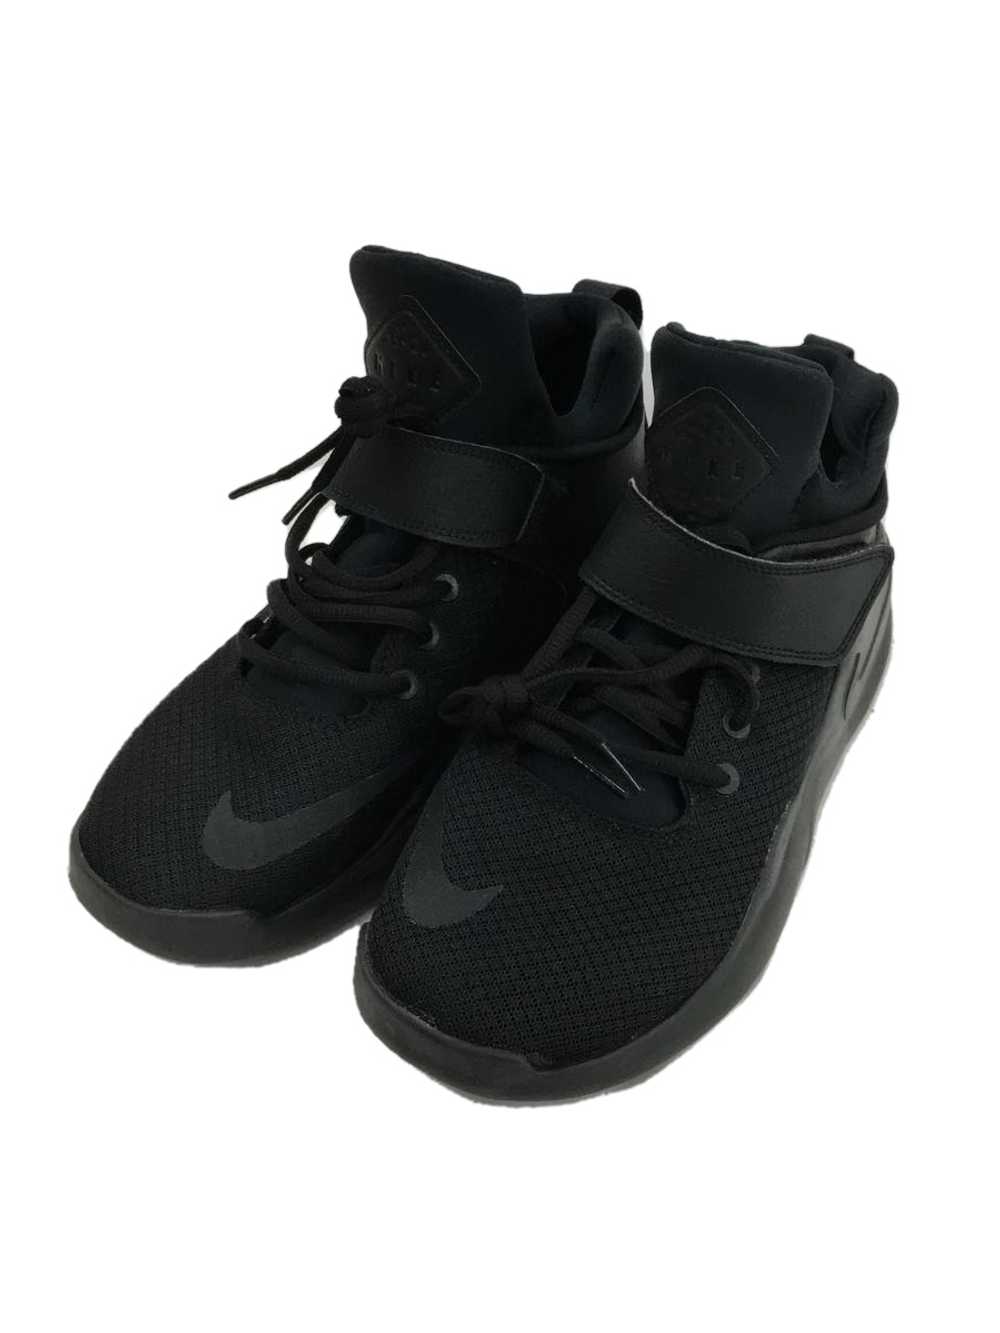 Nike Kwazi/Kwazai/Black/844839-001/Blk Shoes US7.… - image 2